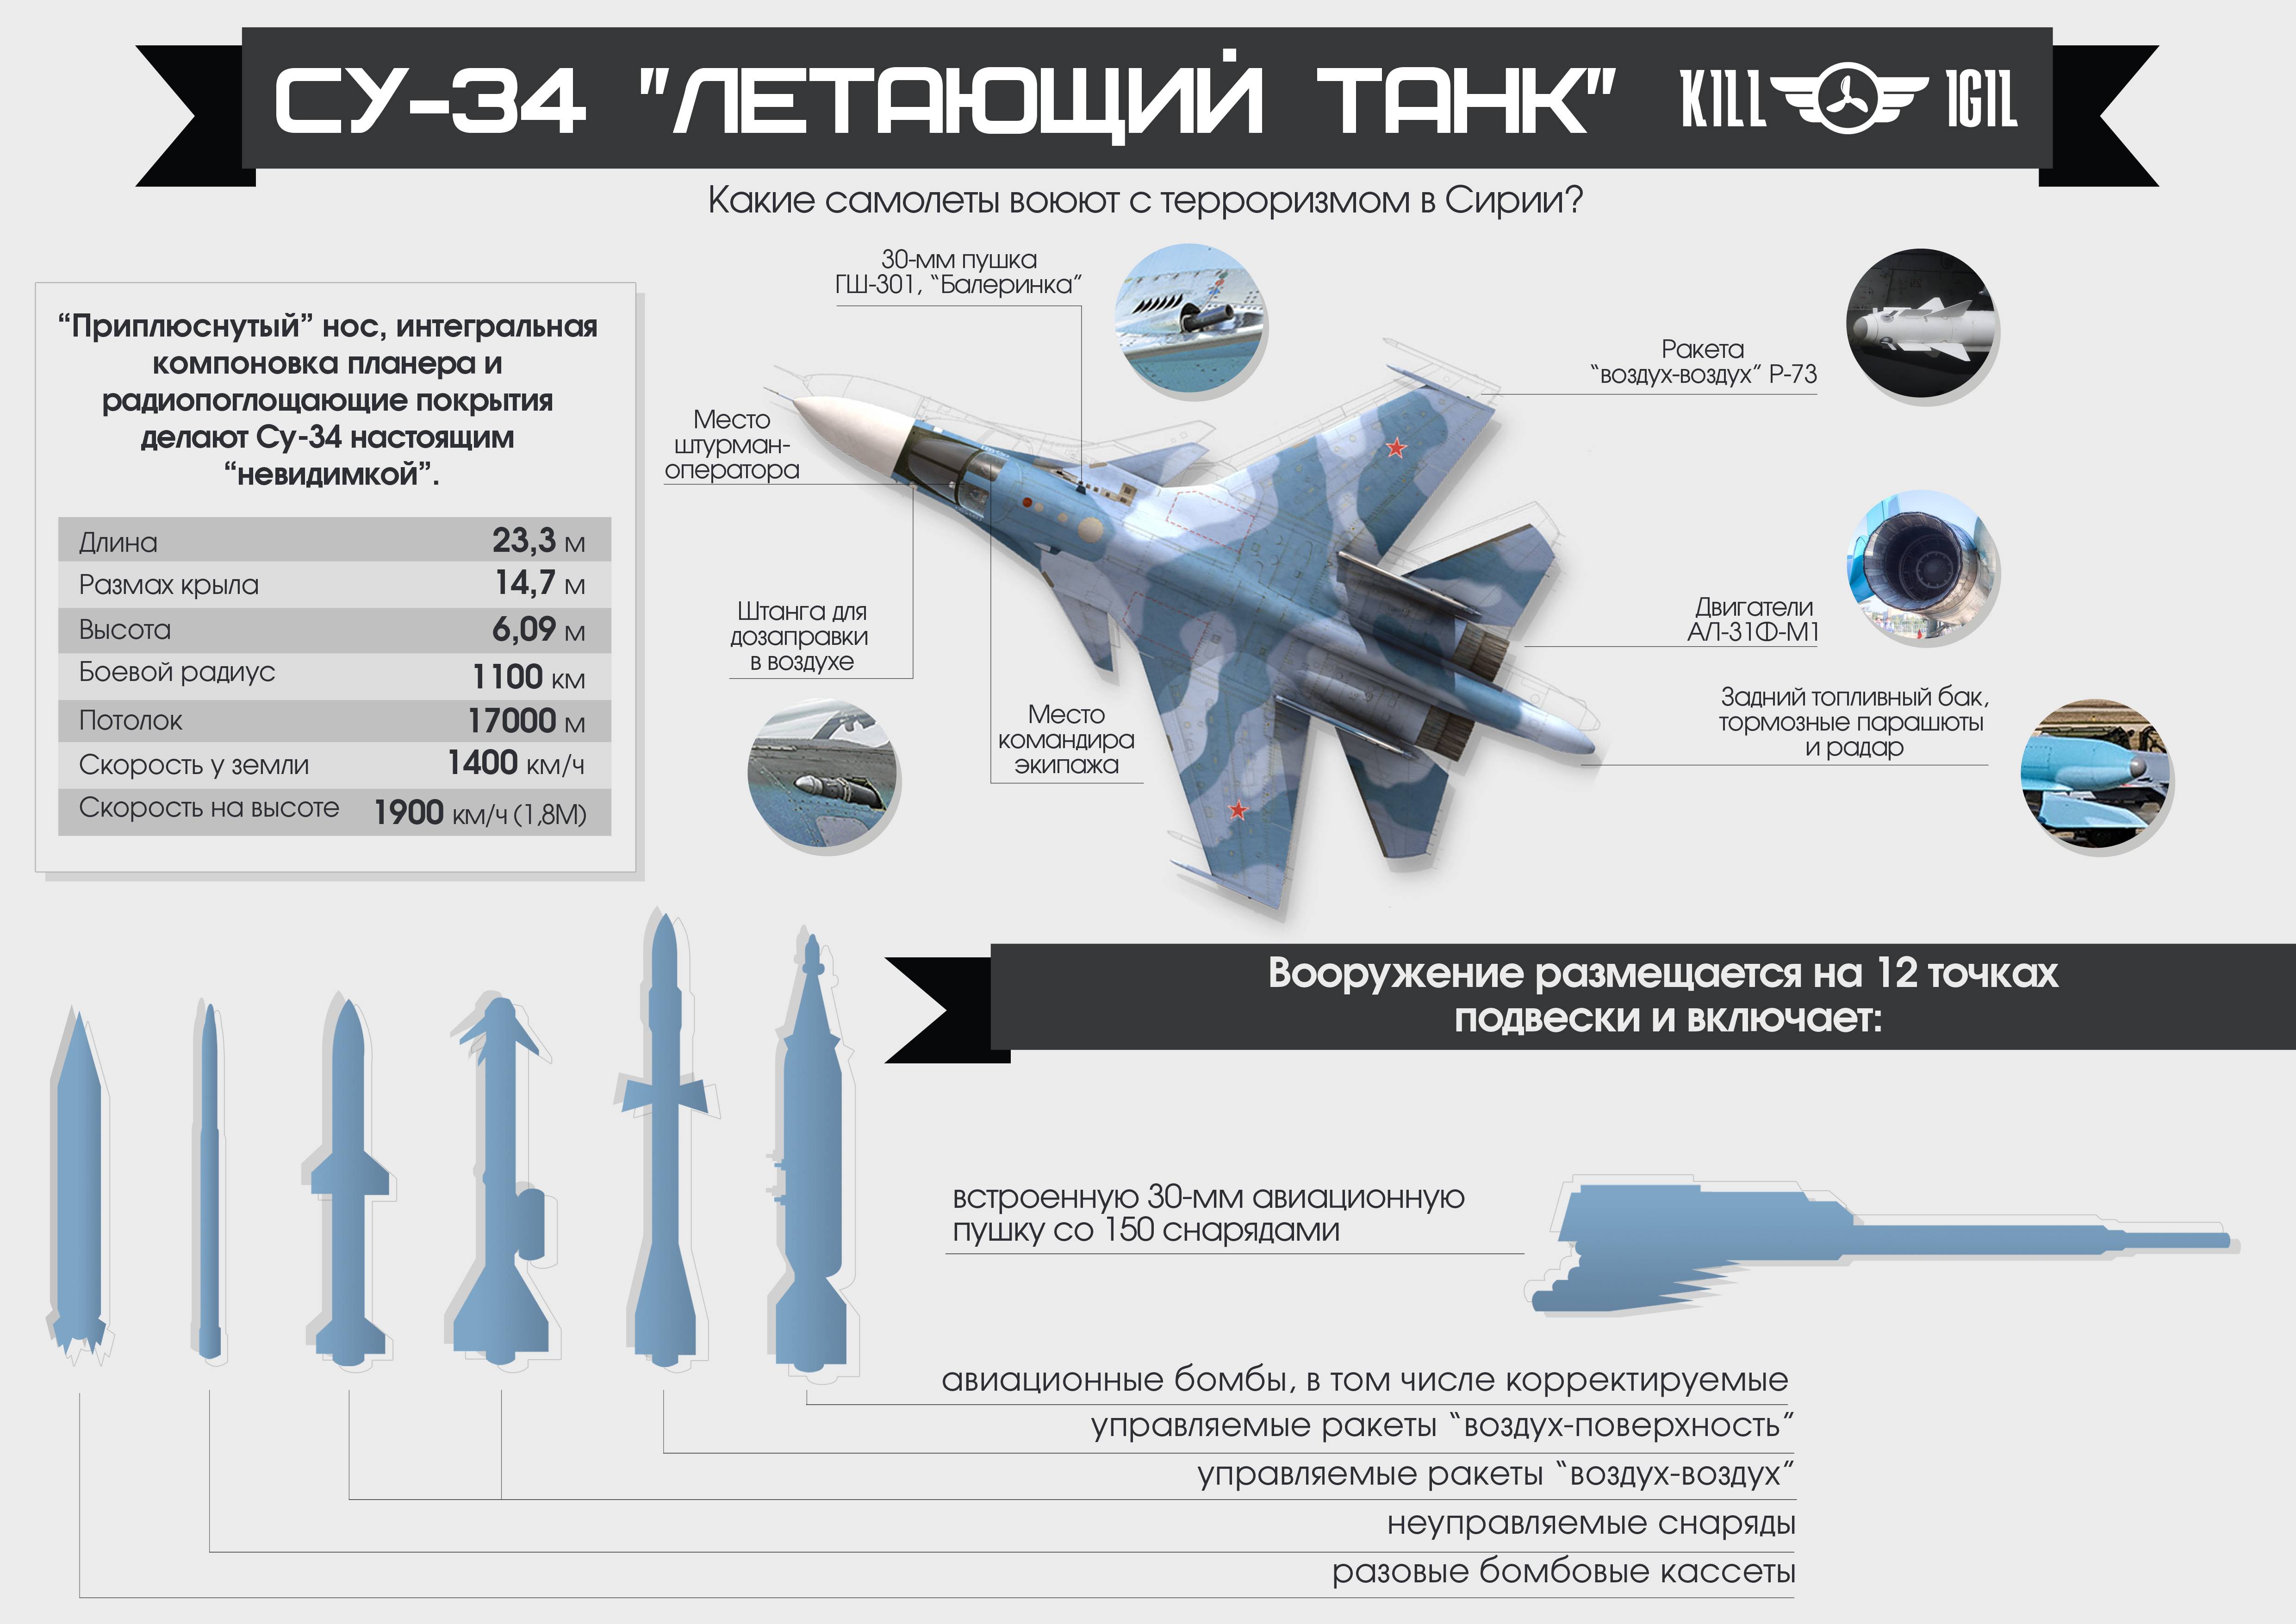 Истребитель су-30 см: характеристики, вооружение, описание, фото